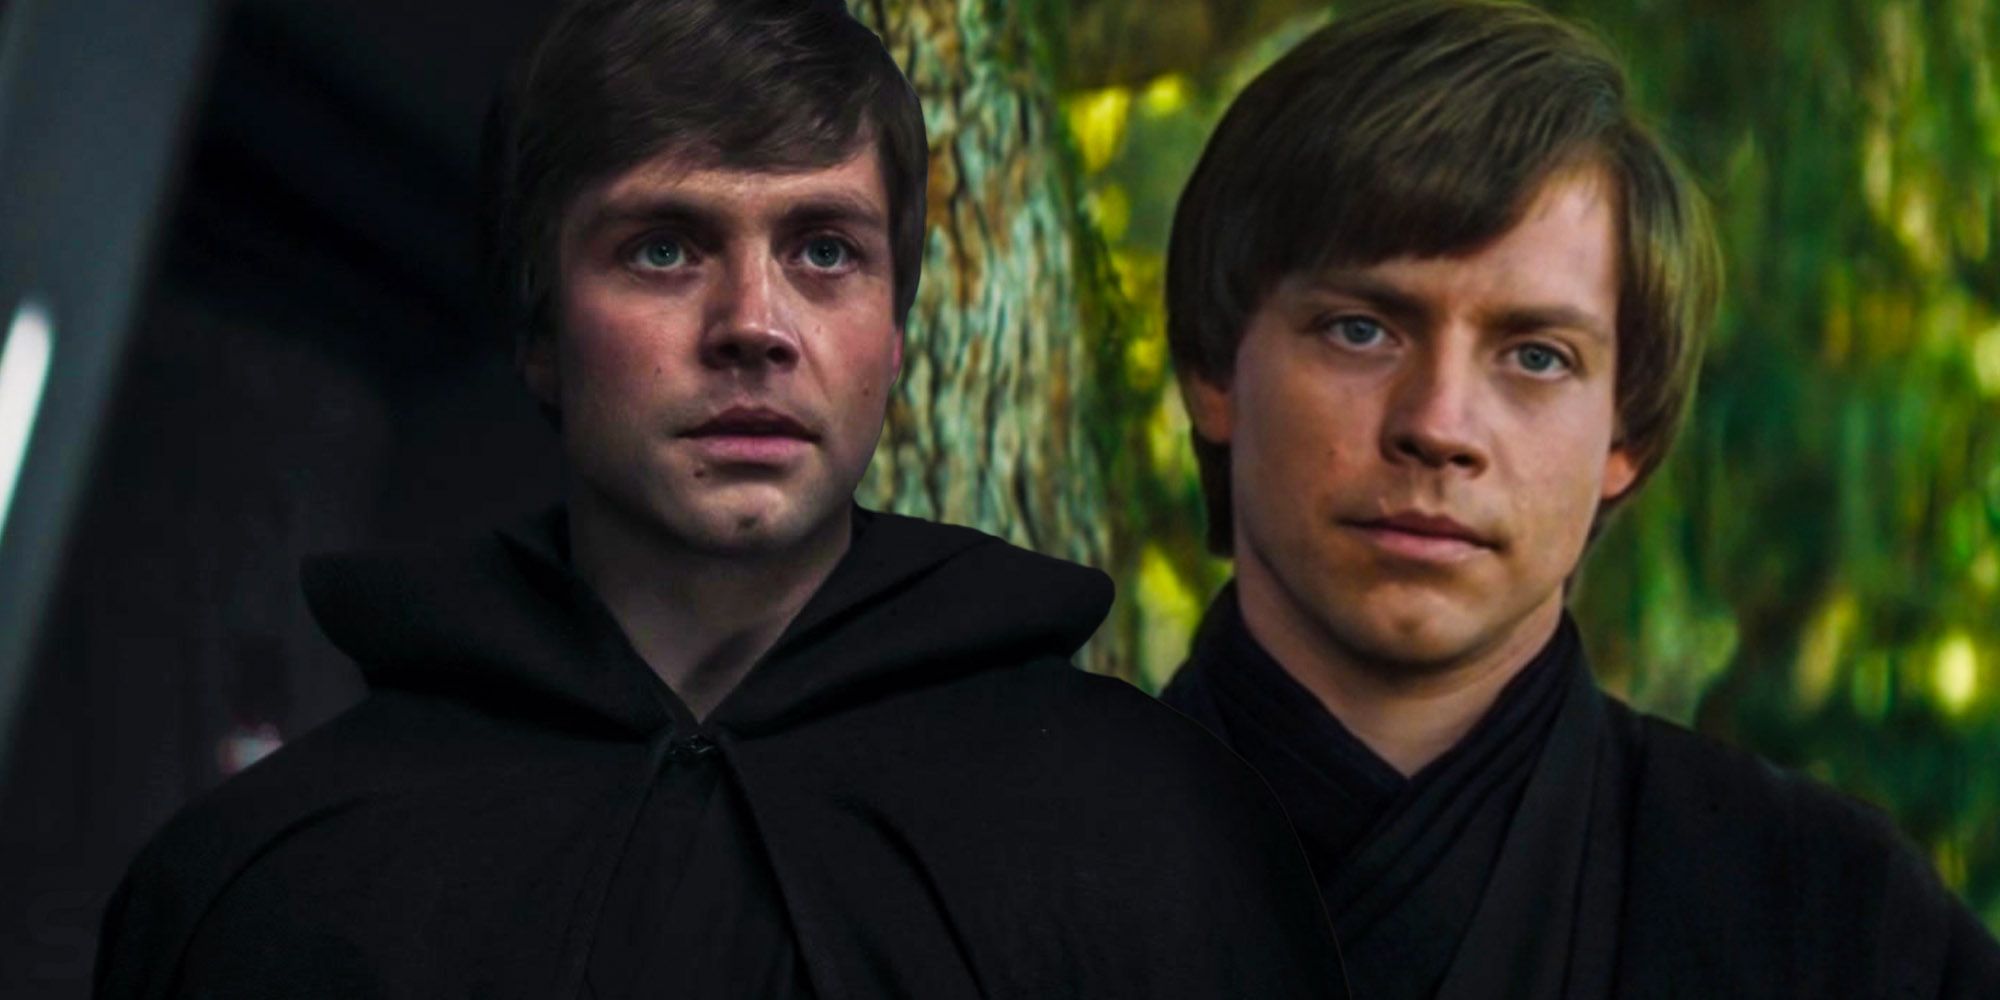 Luke-Skywalker-CGI-parece-melhor-no-livro-de-boba-fett-do-que-o-mandaloriano